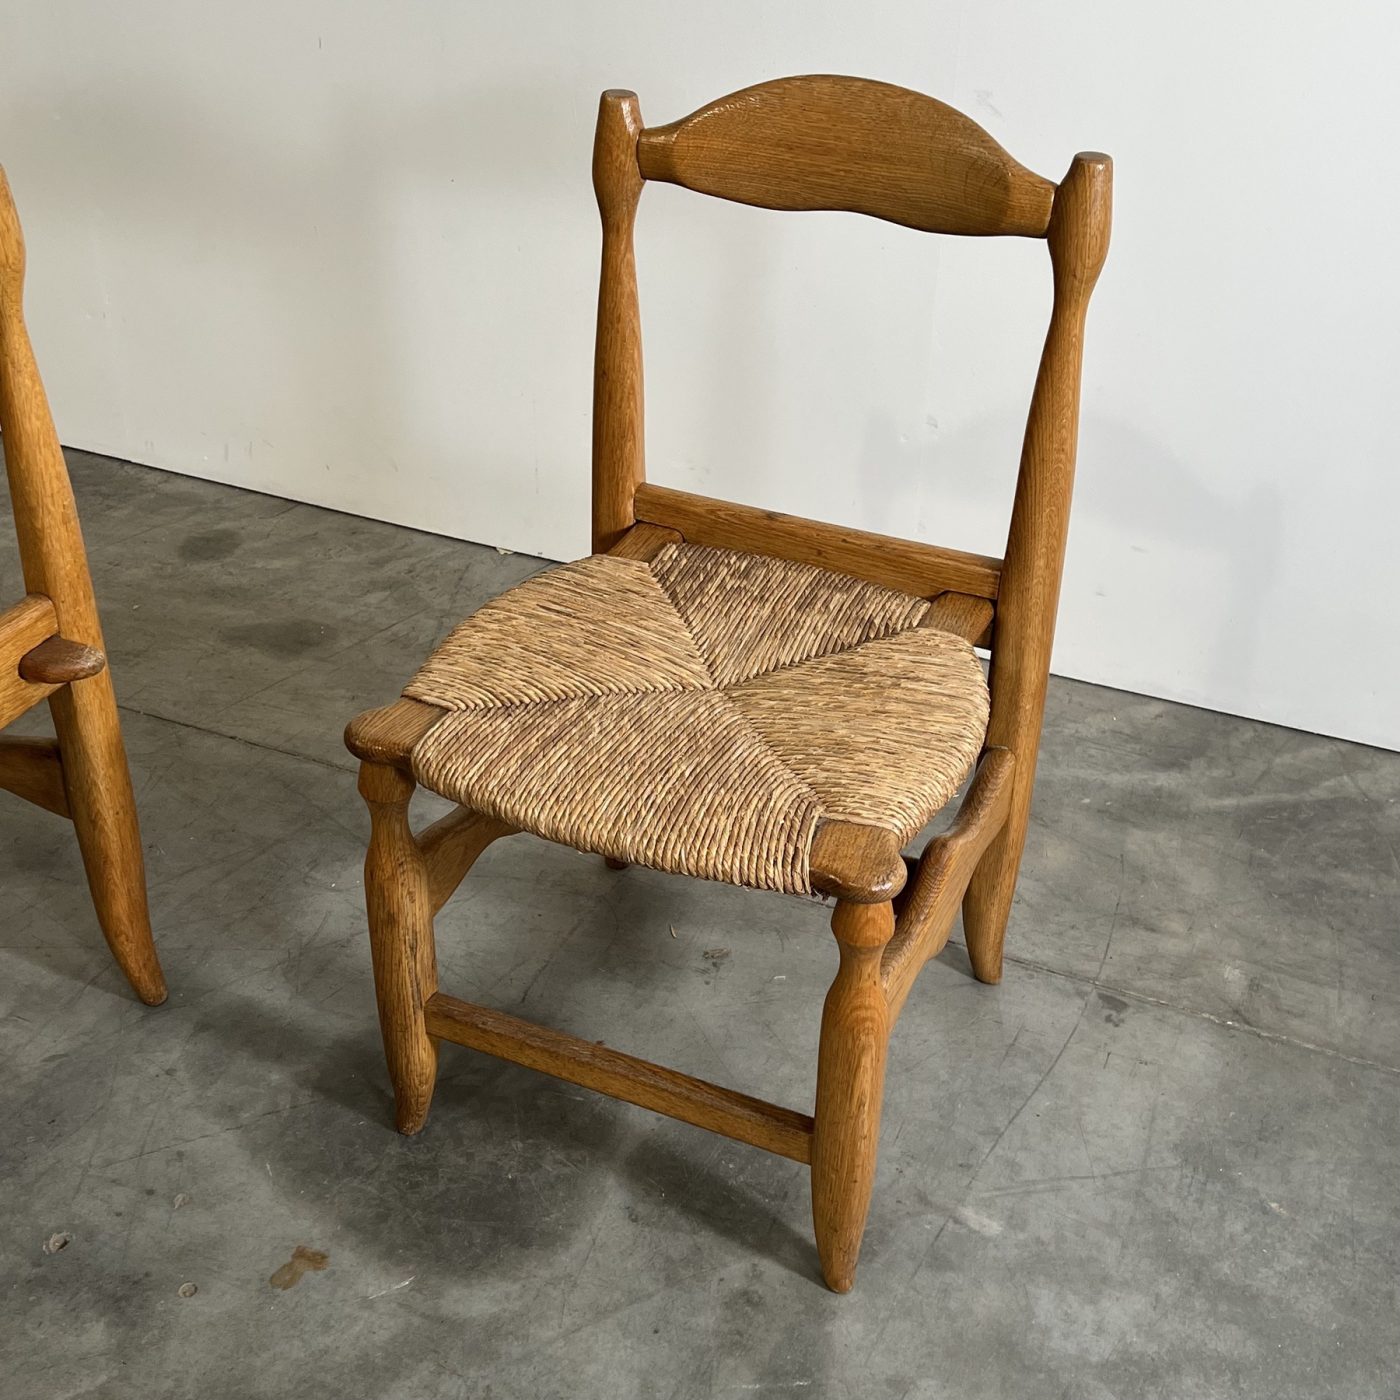 objet-vagabond-guillerme-chairs0000